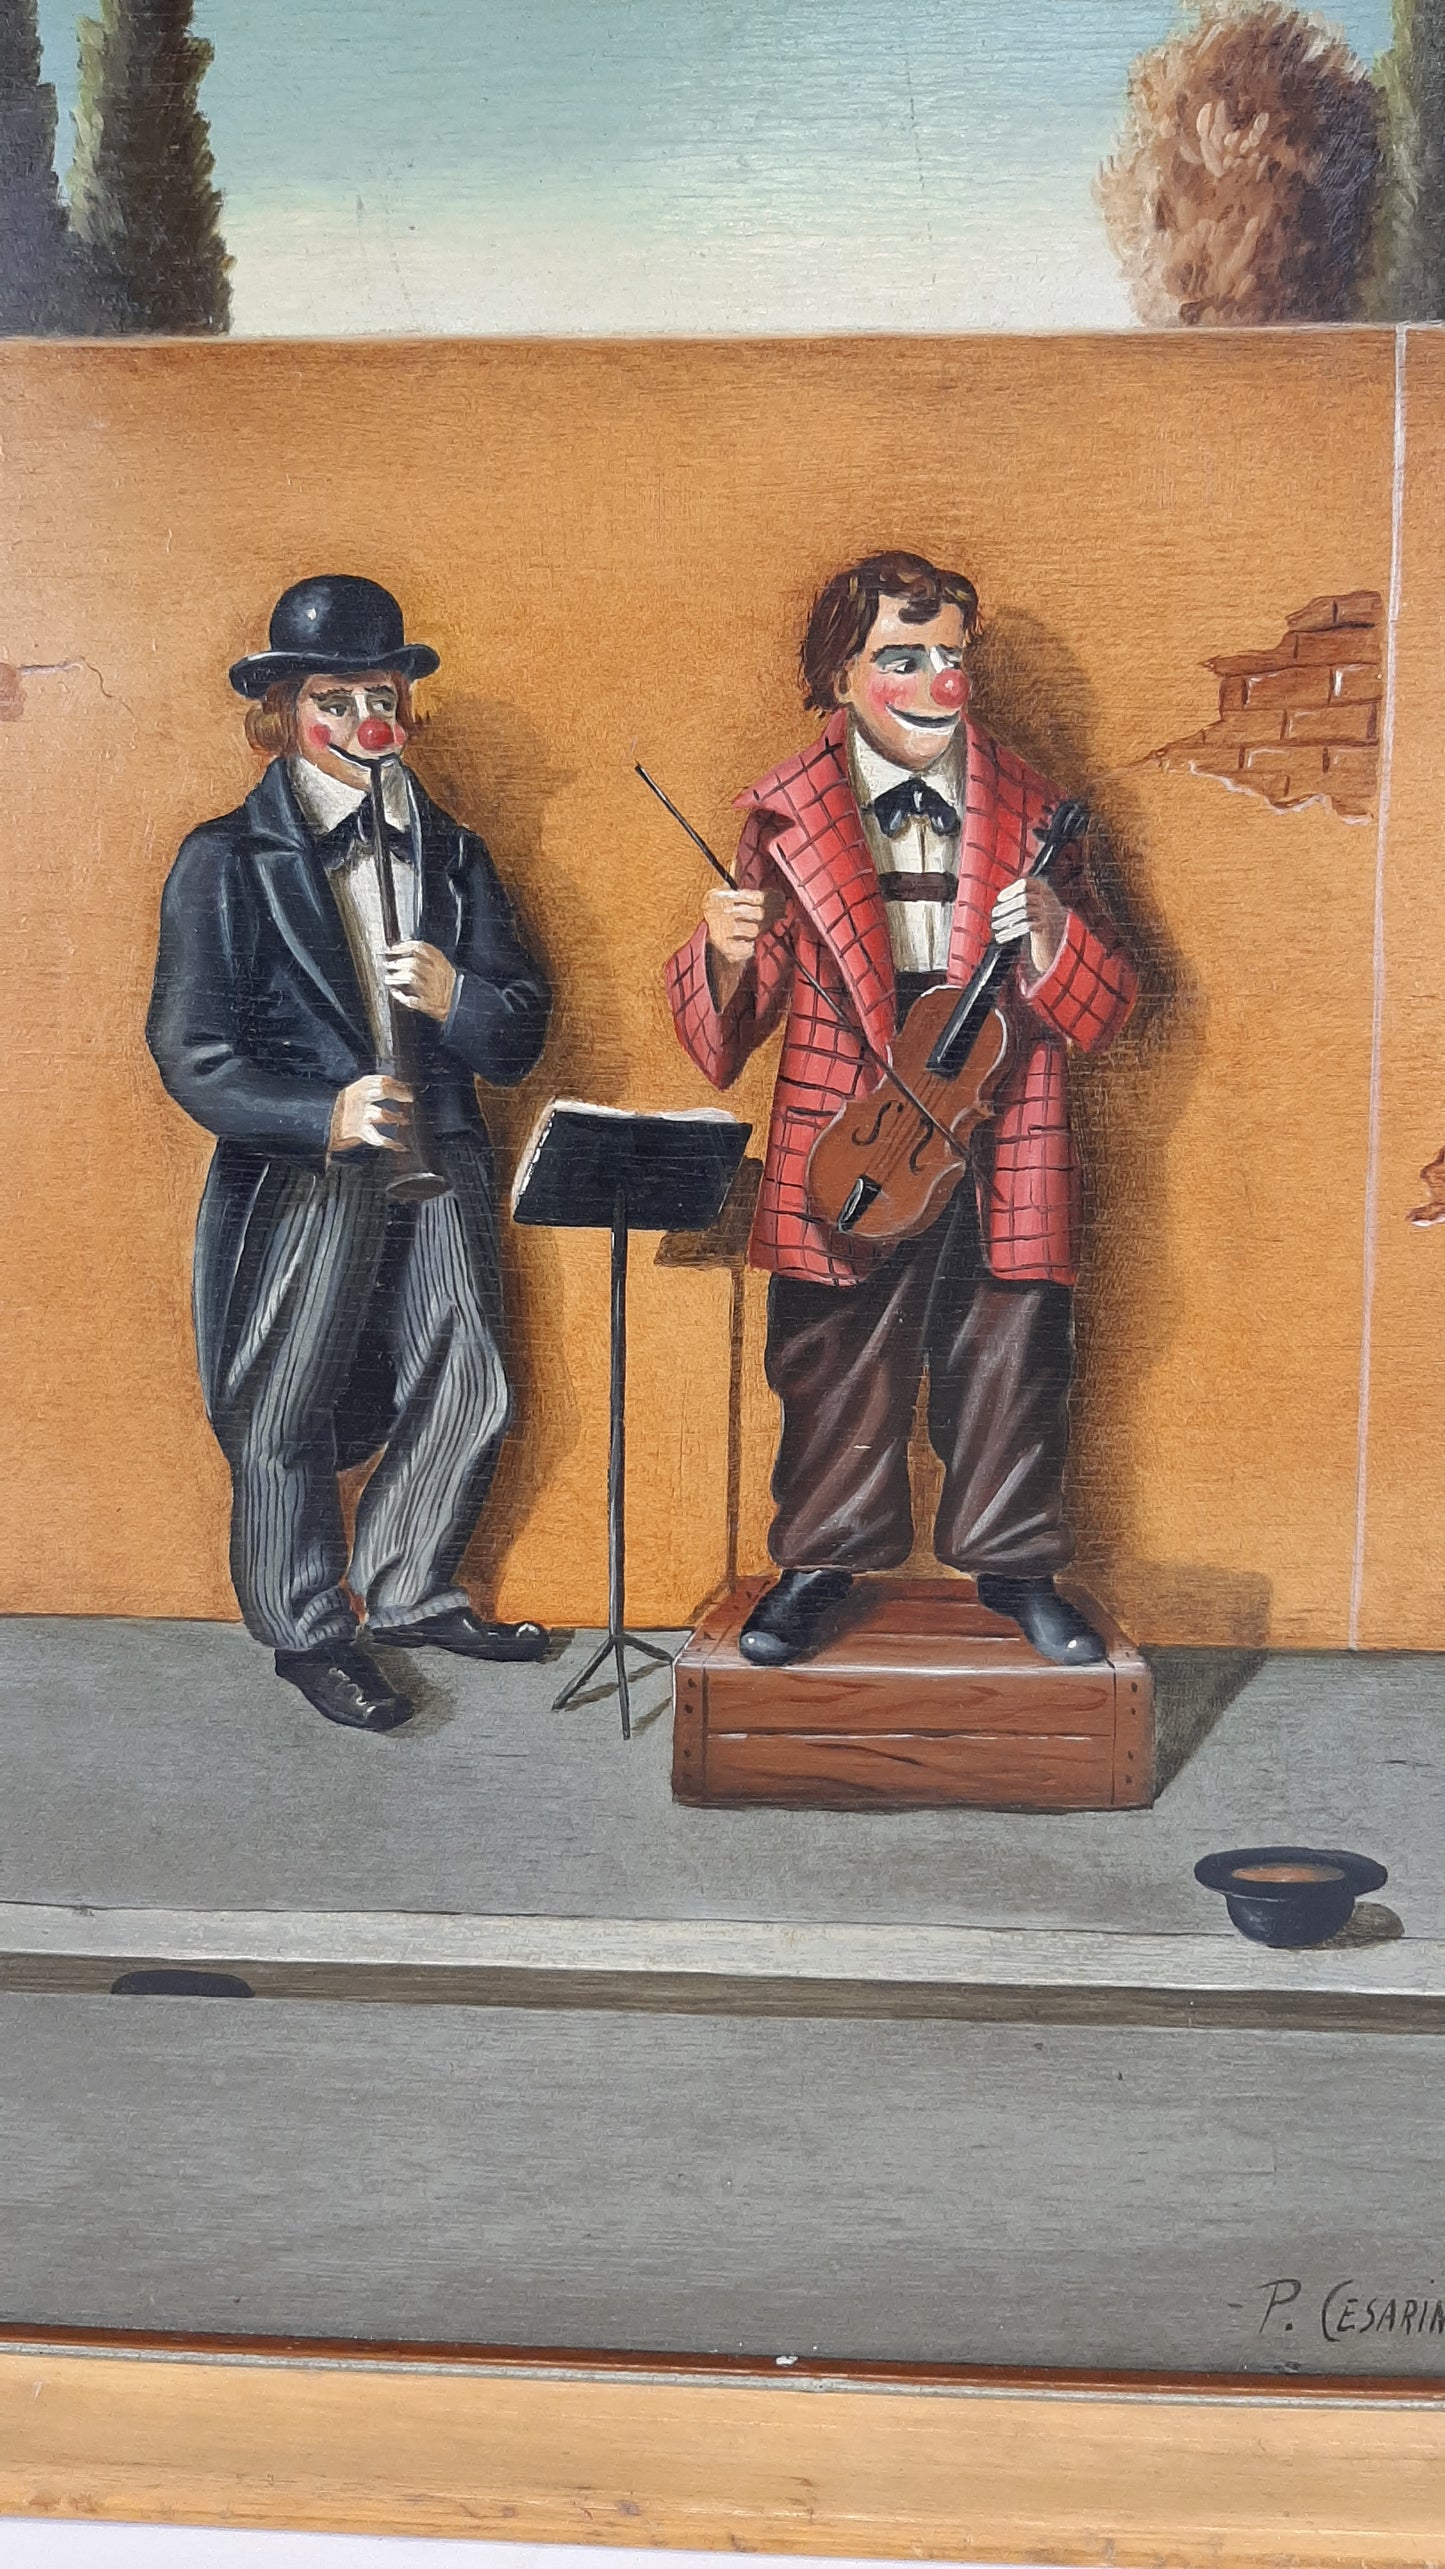 Dipinto ad olio opera del pittore Pier Luigi Cesarini concerto di clown per strada quadr ad olio su tavola firmato ritratto clown pagliacci X5